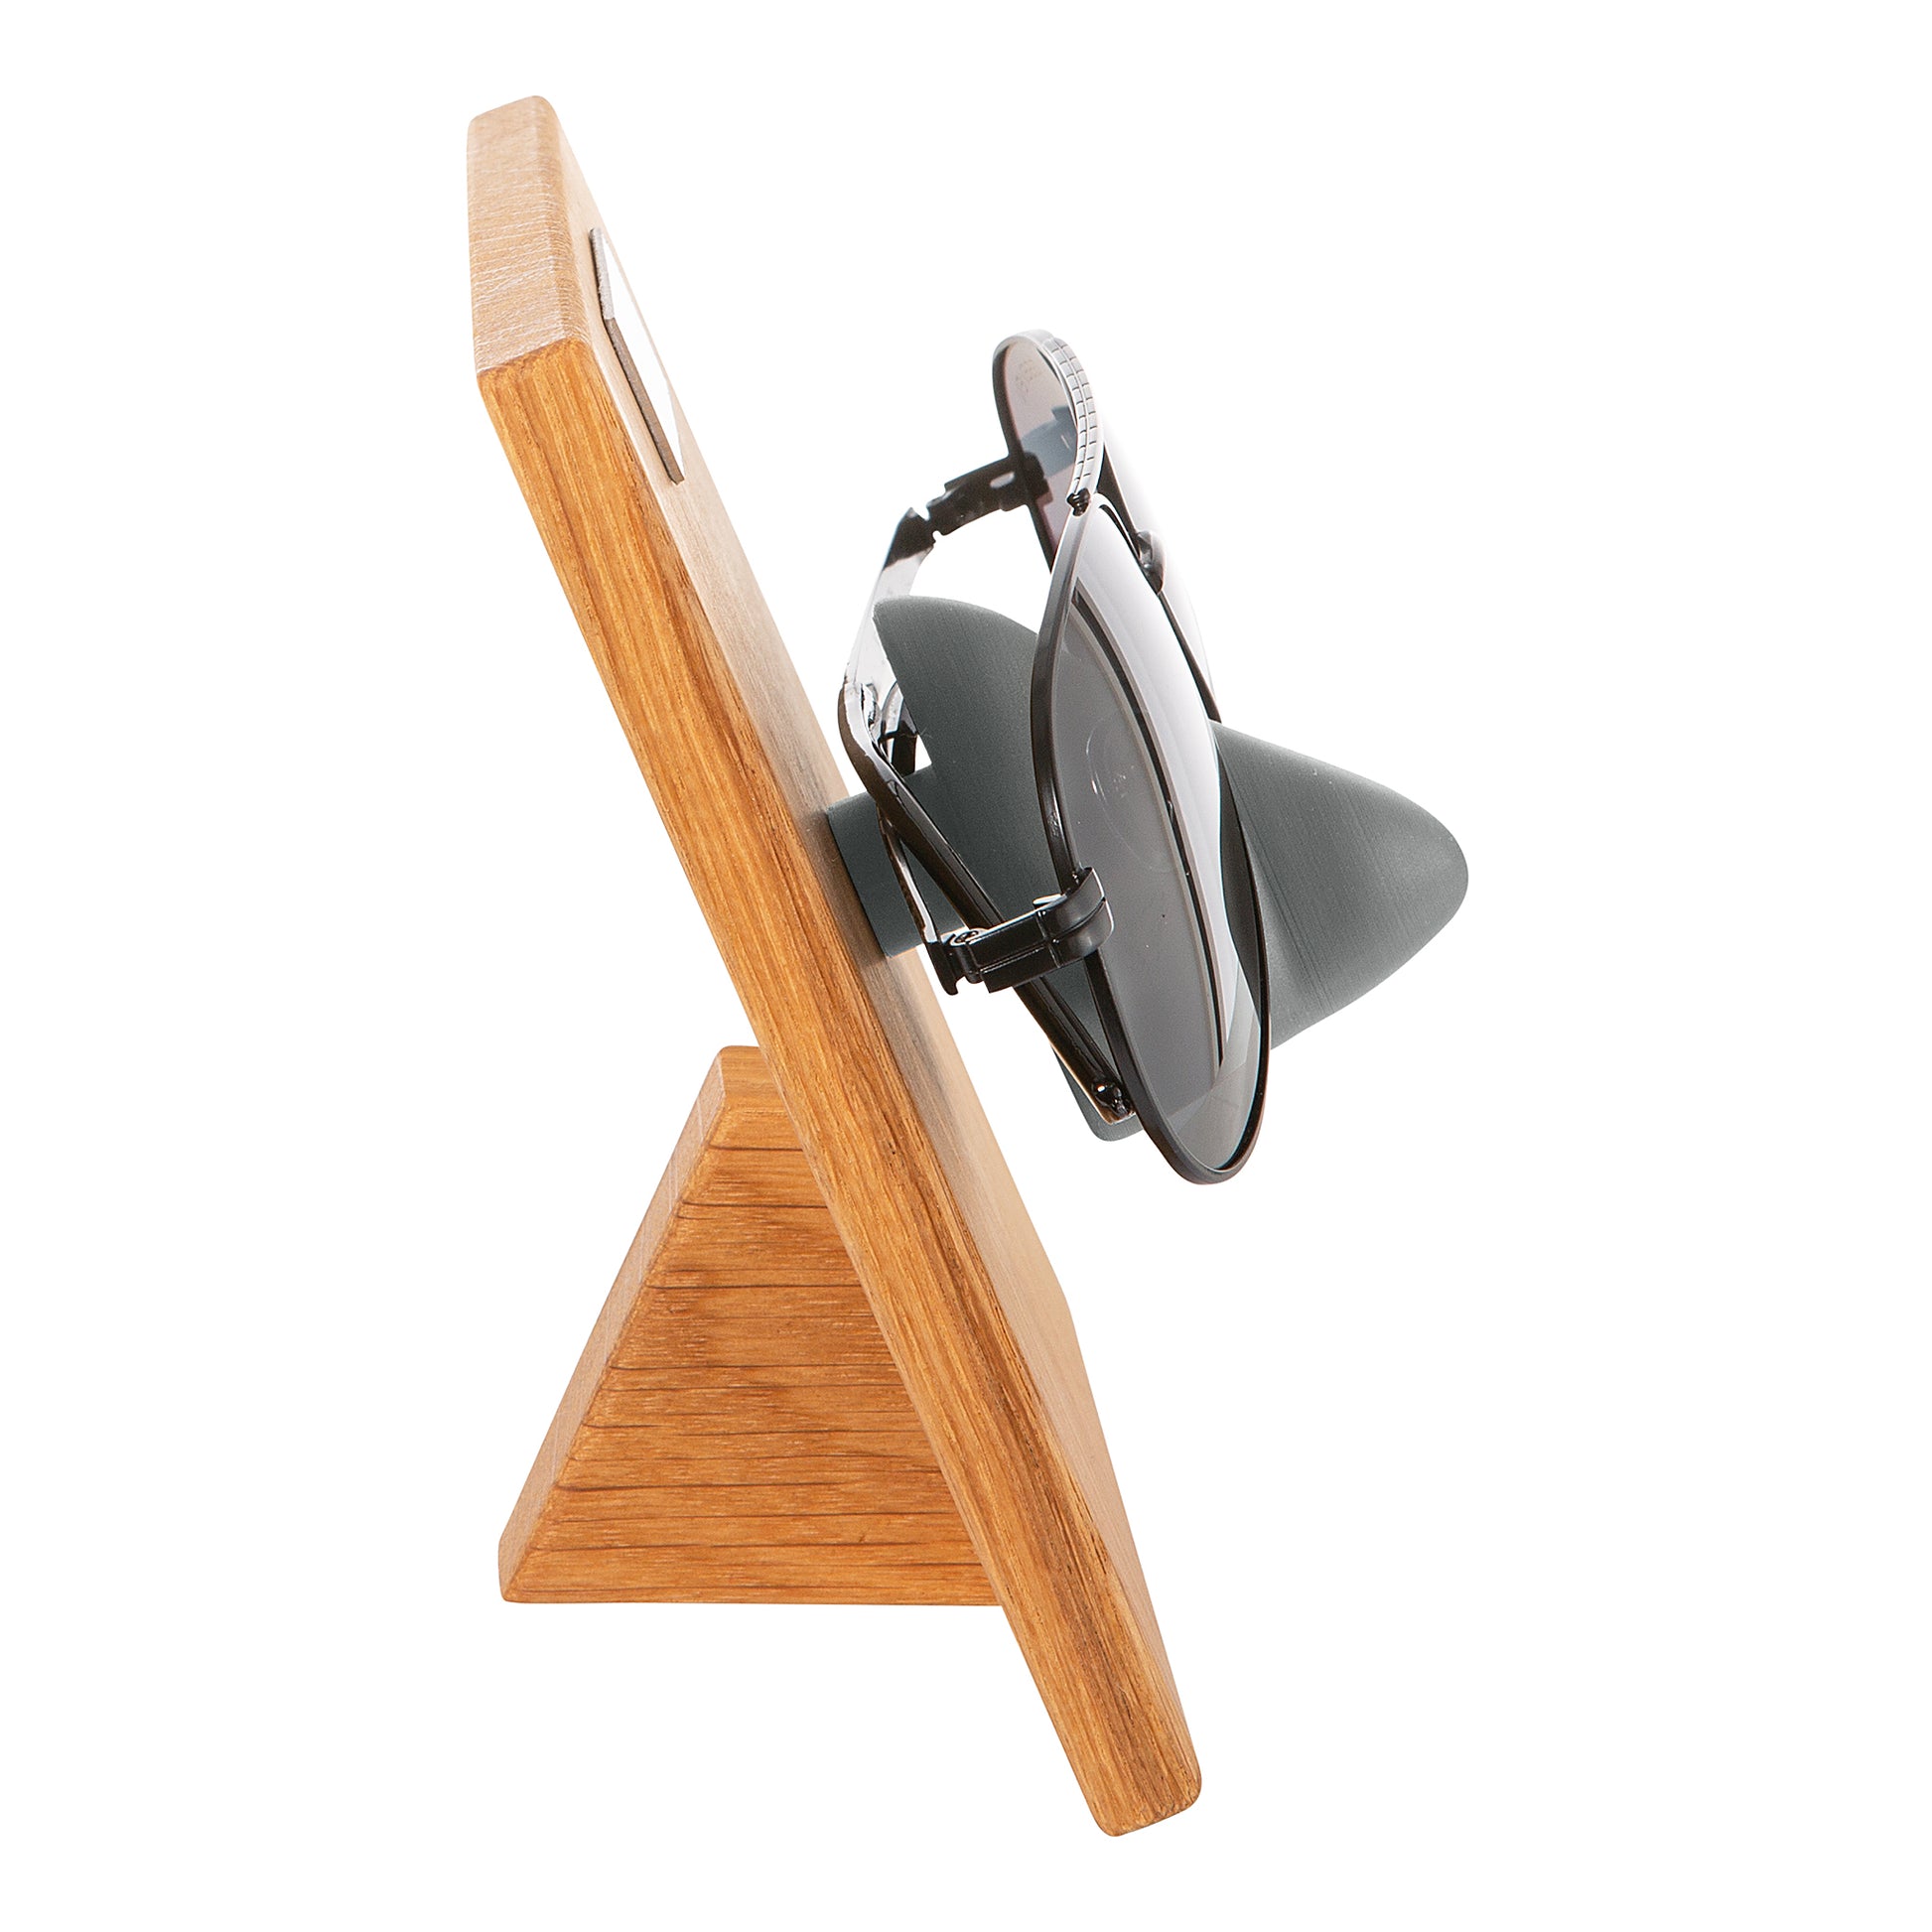 Gläserfreund Kessy Brillenorganizer und Brillenhalter für die Wand -  Brillenaufbewahrung für mehrere Brillen, Brillenregal für mehr Ordnung :  : Küche, Haushalt & Wohnen